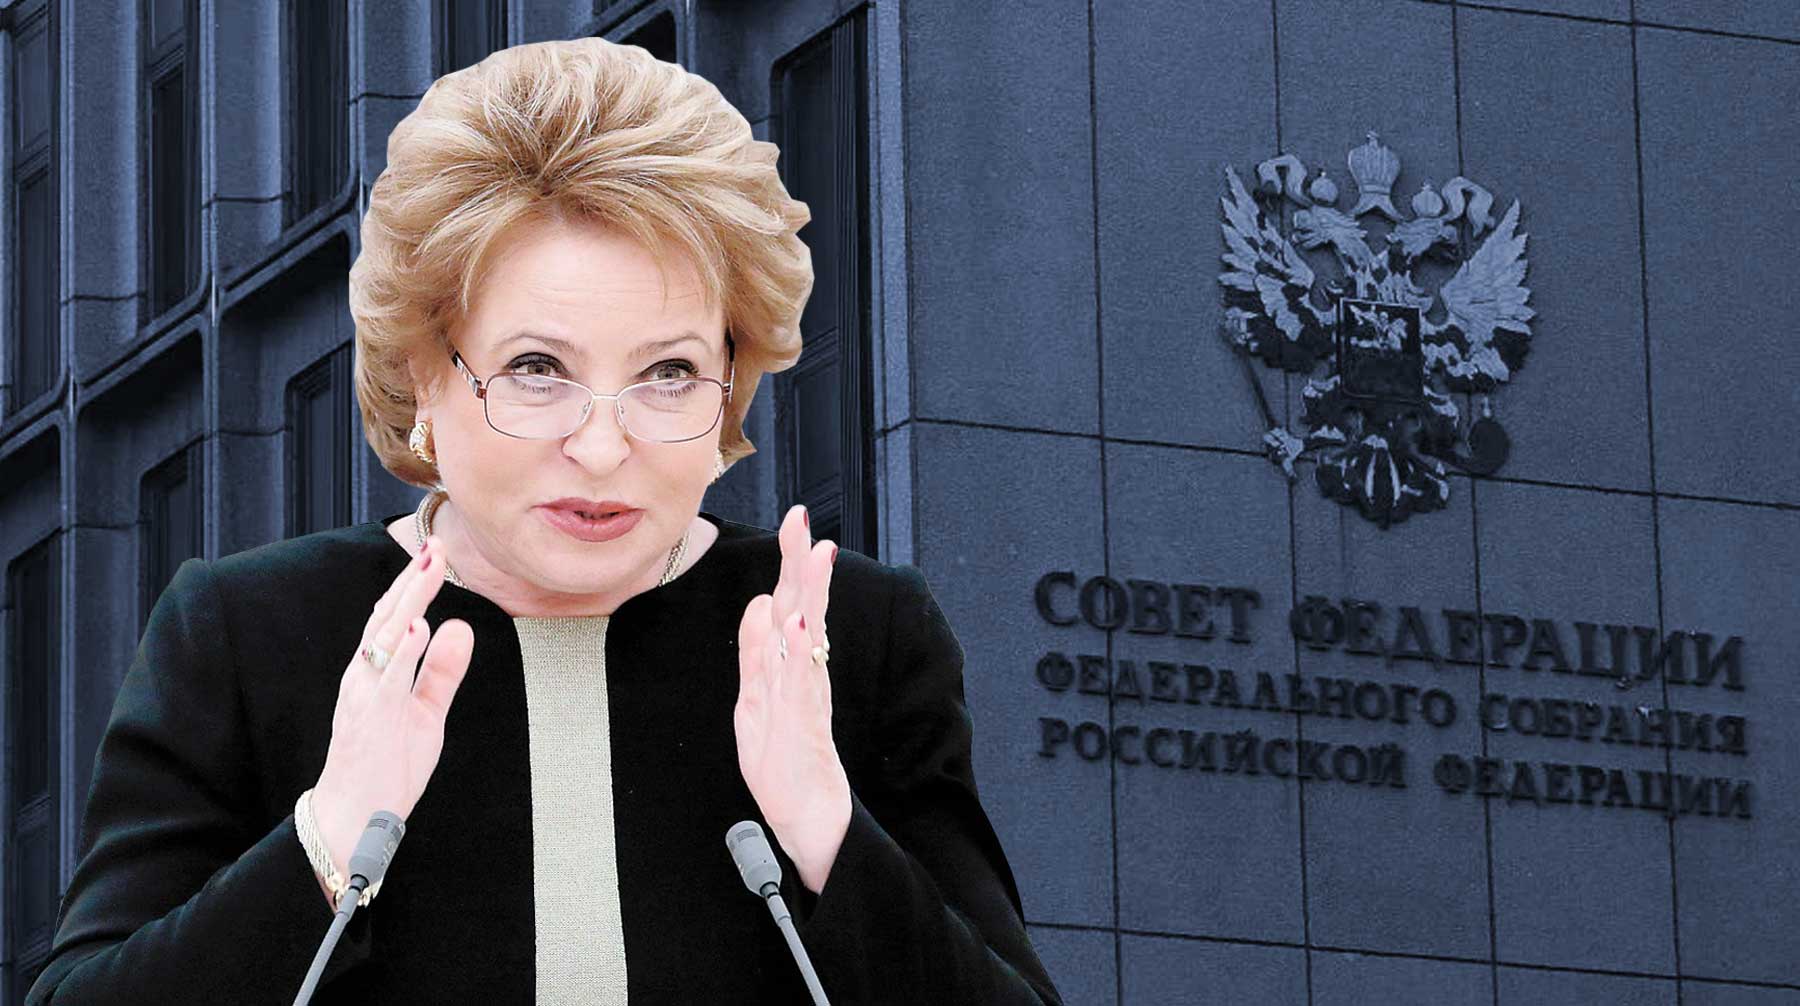 Валентина Матвиенко в третий раз может стать сенатором от Санкт-Петербурга Коллаж: © Daily Storm